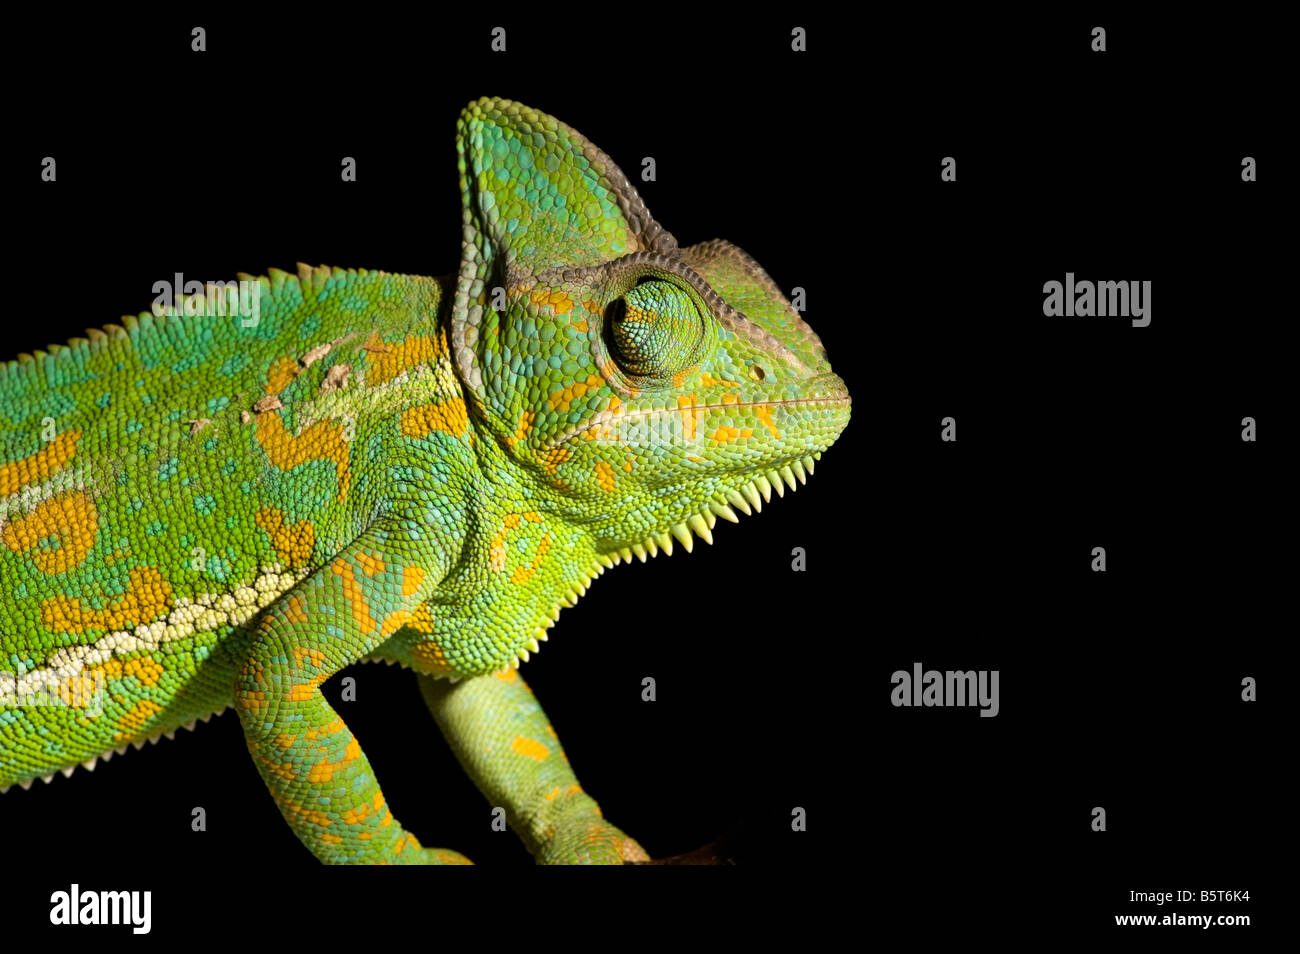 Female veiled or Yemen chameleon Chamaeleo catytratus eye movement Stock Photo